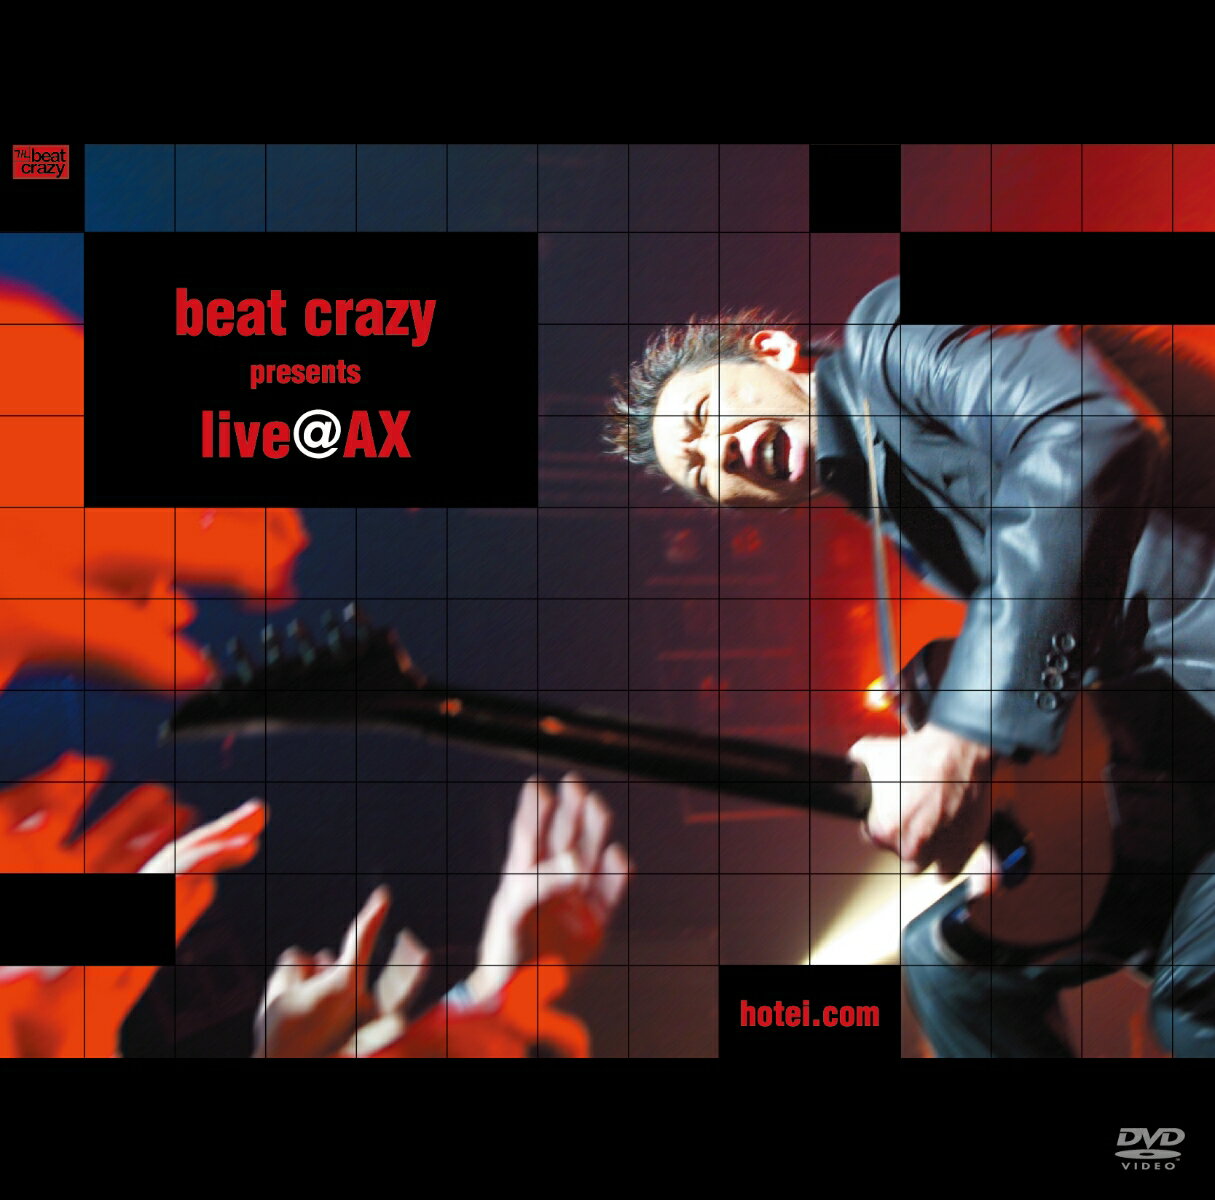 beat crazy presents live@AX [ 布袋寅泰 ]